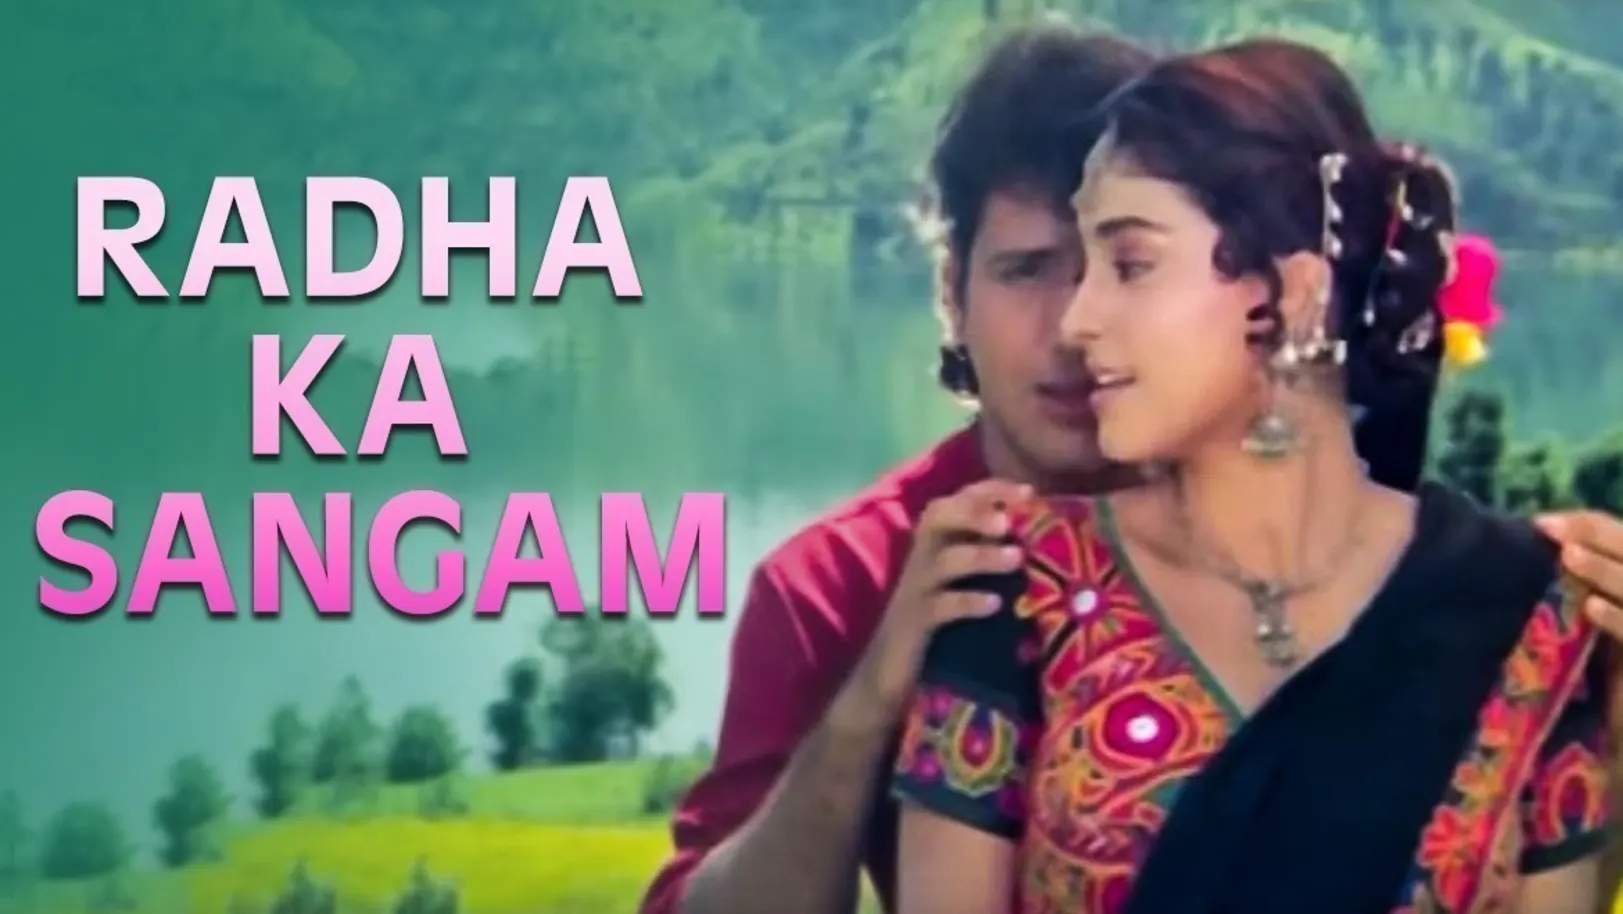 Radha Ka Sangam Movie